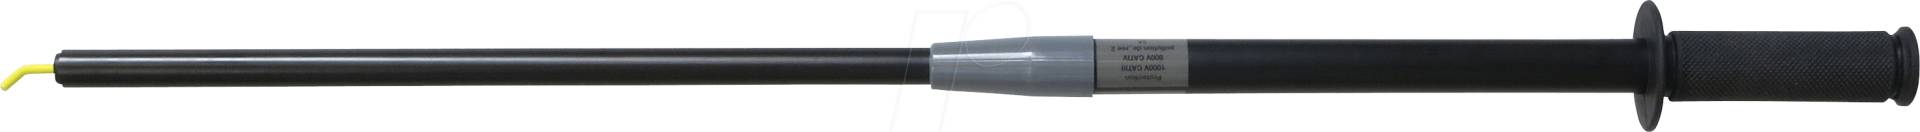 TPS 4785 2A - Prüfspitze, ausziehbar, schwarz, 2 A von ELECTRO PJP